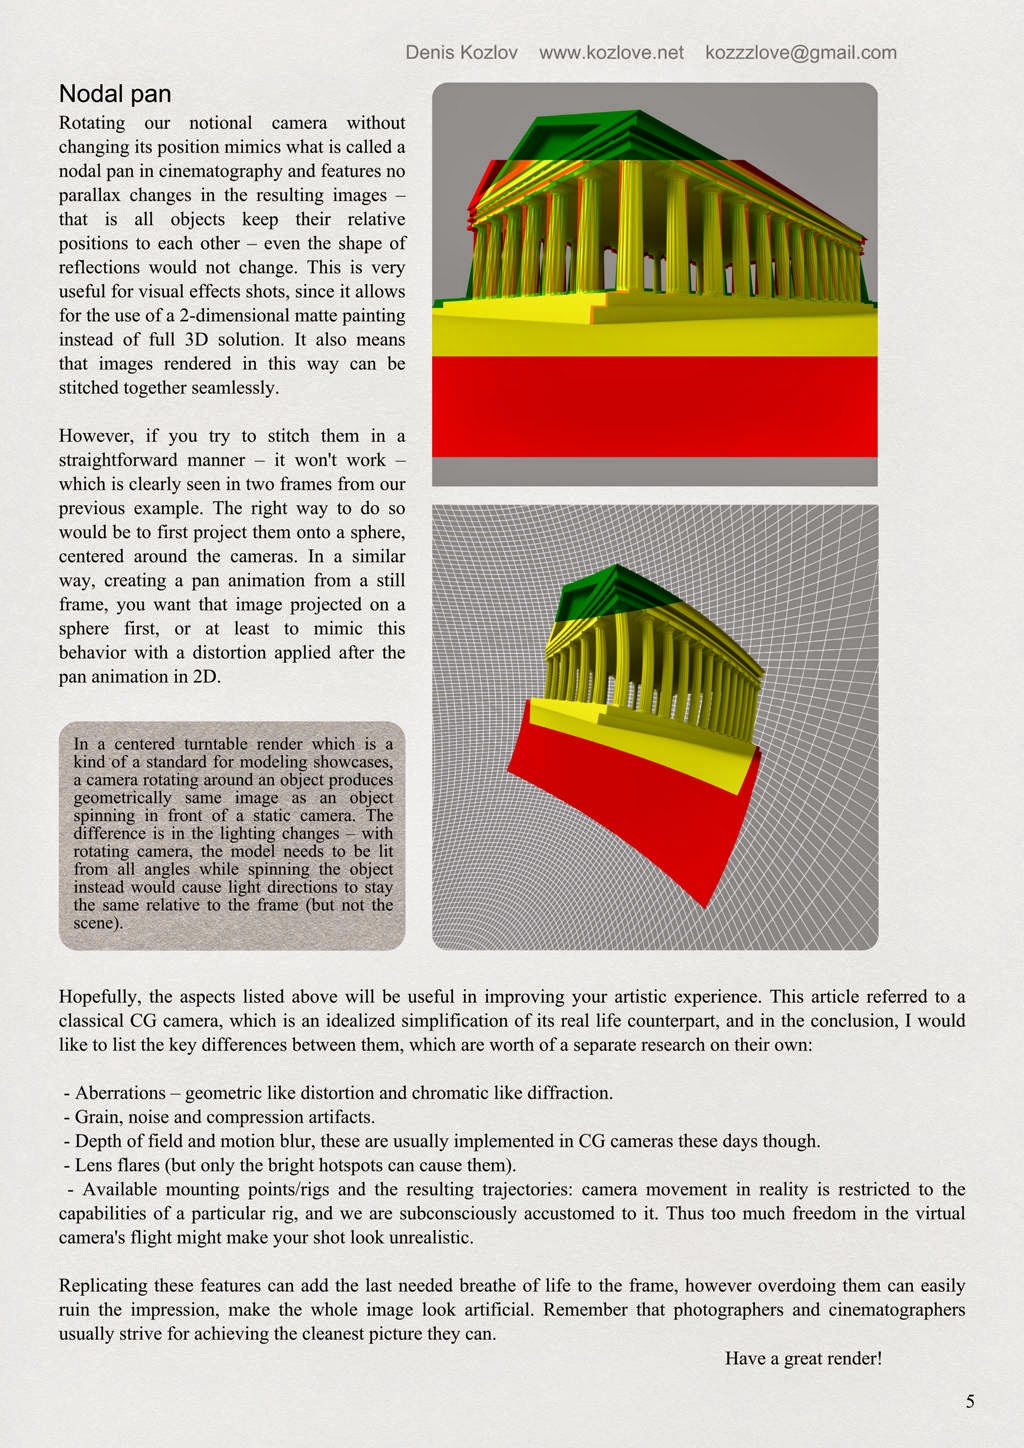 Anatomy of a CG camera by Denis Kozlov - page 5